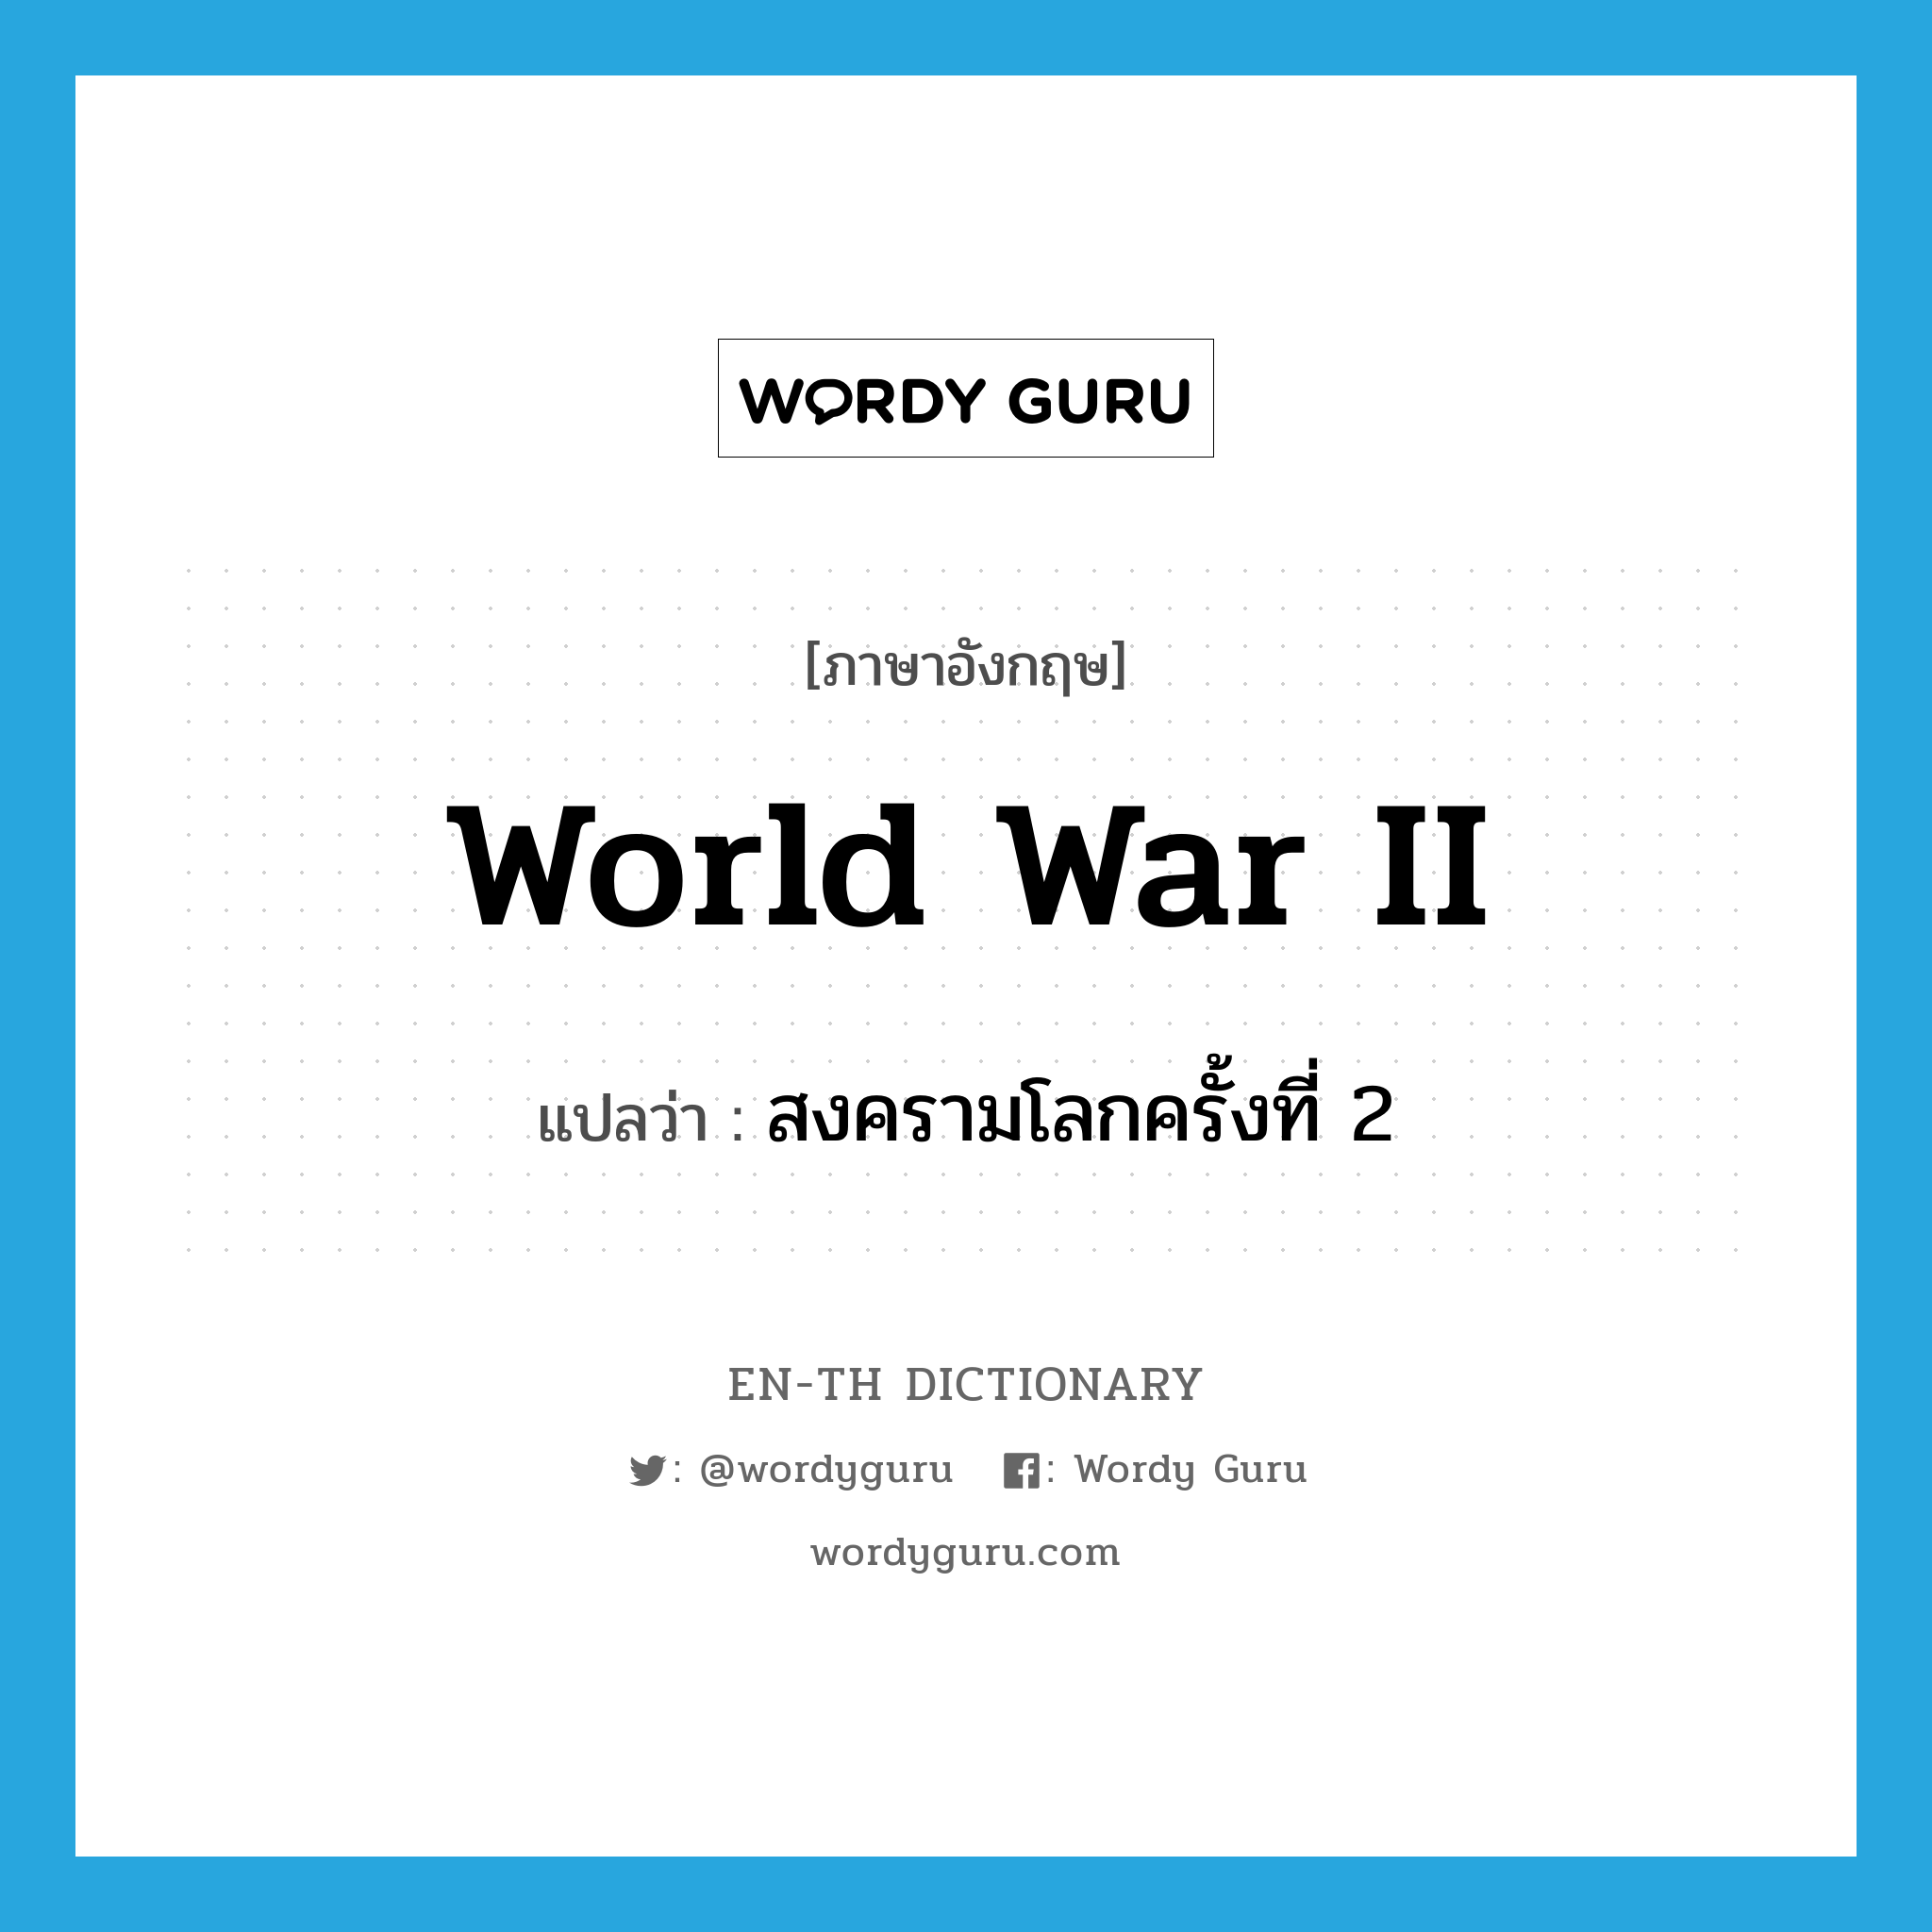 World War II แปลว่า?, คำศัพท์ภาษาอังกฤษ World War II แปลว่า สงครามโลกครั้งที่ 2 ประเภท N หมวด N